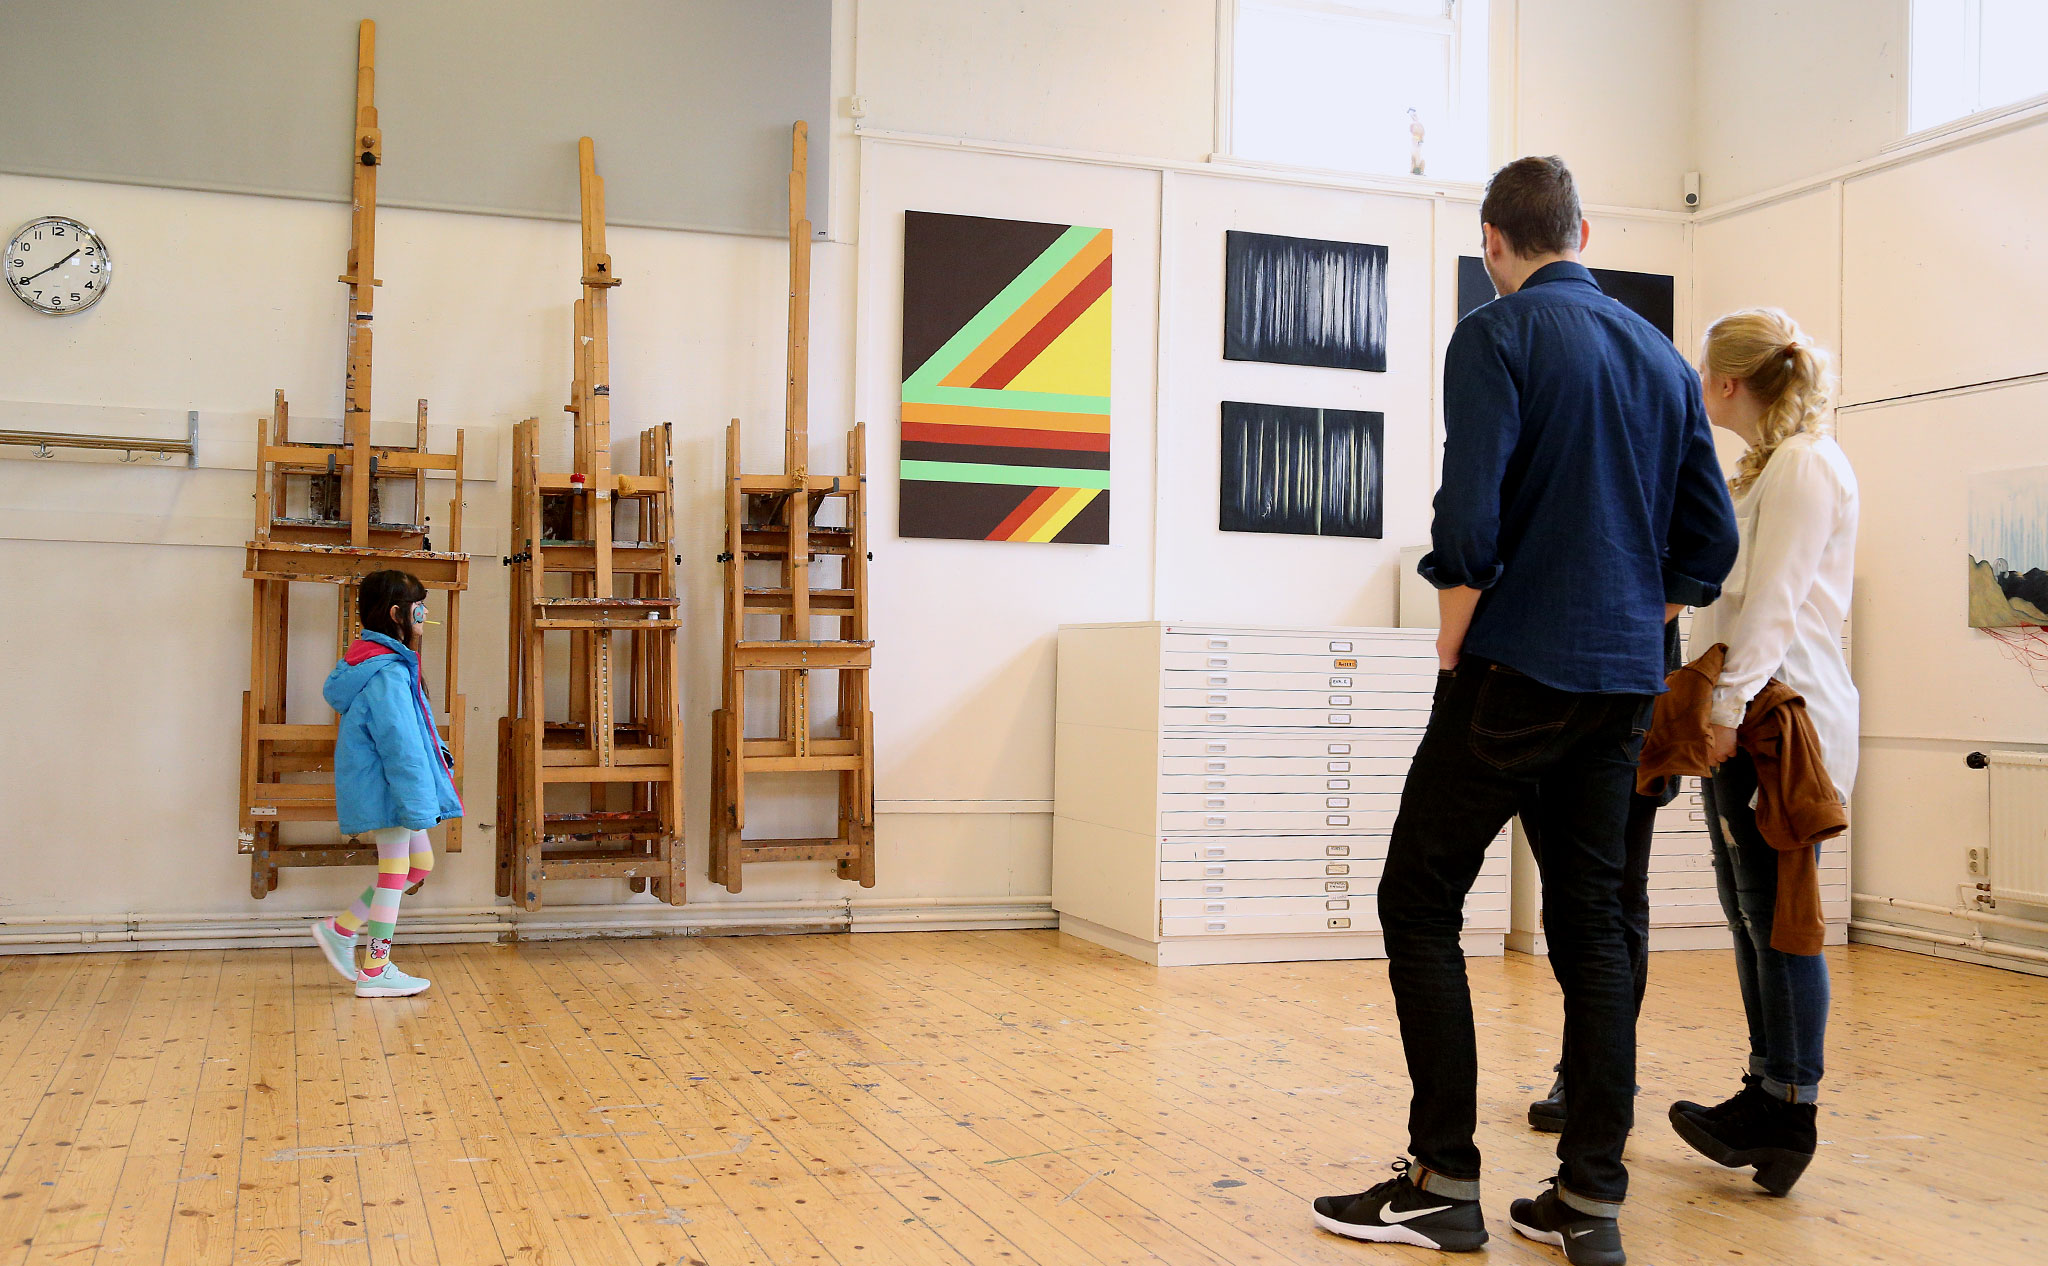 Tre personer står med ryggen mot kameran och titta på konsten som hänger på väggen: en tavla med geometriska mönster i klara färger och en tavla i svart och vitt, med abstrakt, skogsliknande motiv. Till vänster i bild går ett barn förbi med en klubba i munnen.